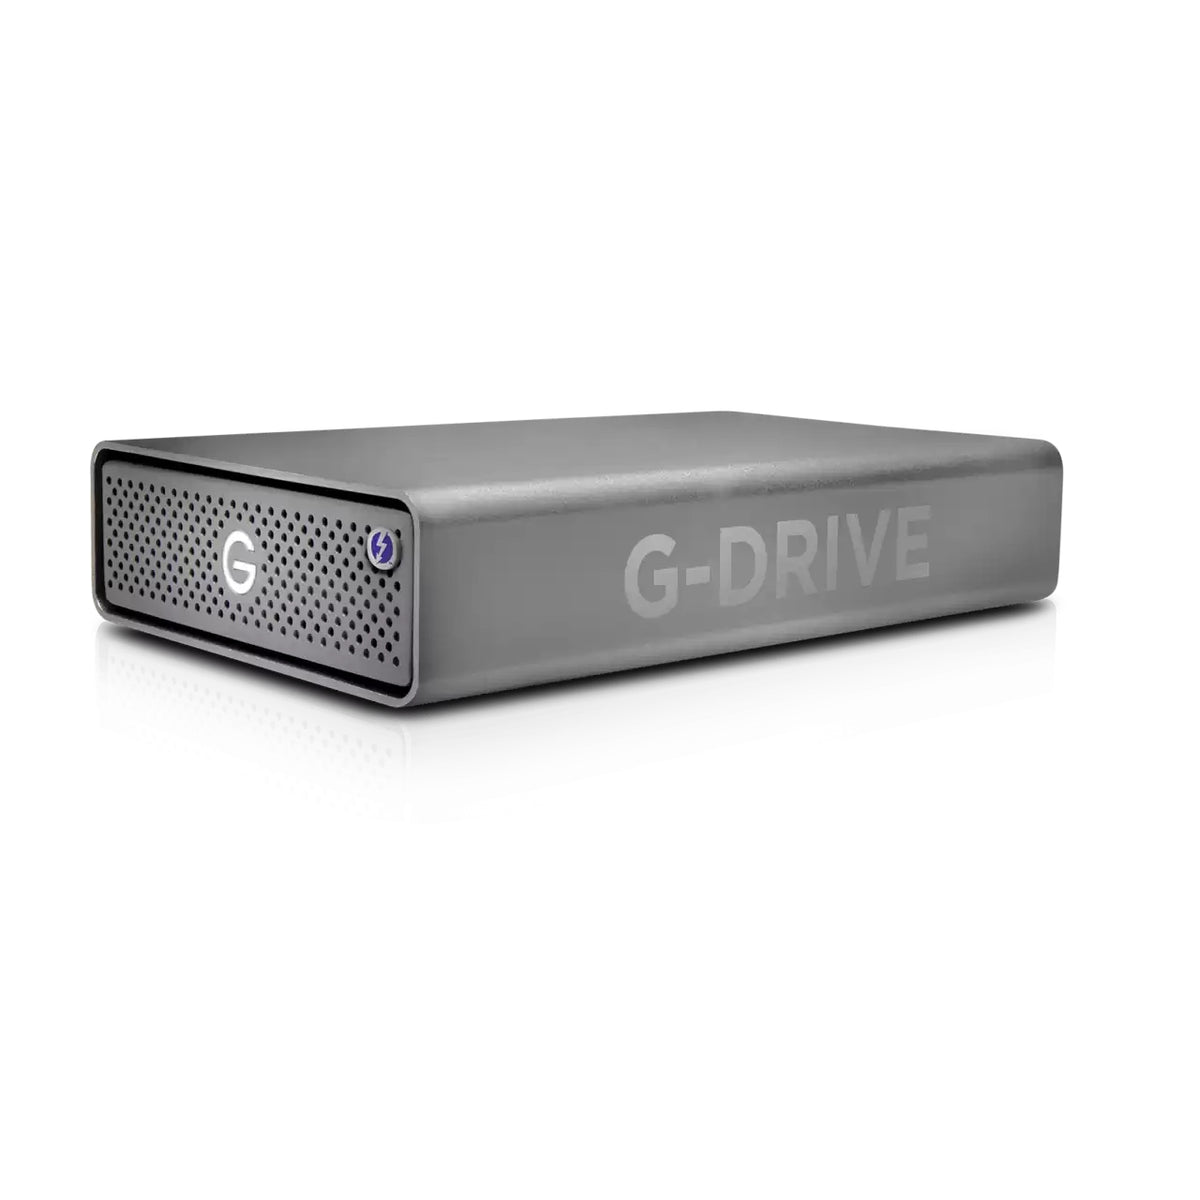 SanDisk Professional G-DRIVE PRO - Disco duro - 12 TB - Externo (sobremesa) - USB 3.2 Gen 1 / Thunderbolt 3 (conector USB C) - 7200 rpm - Gris espacial